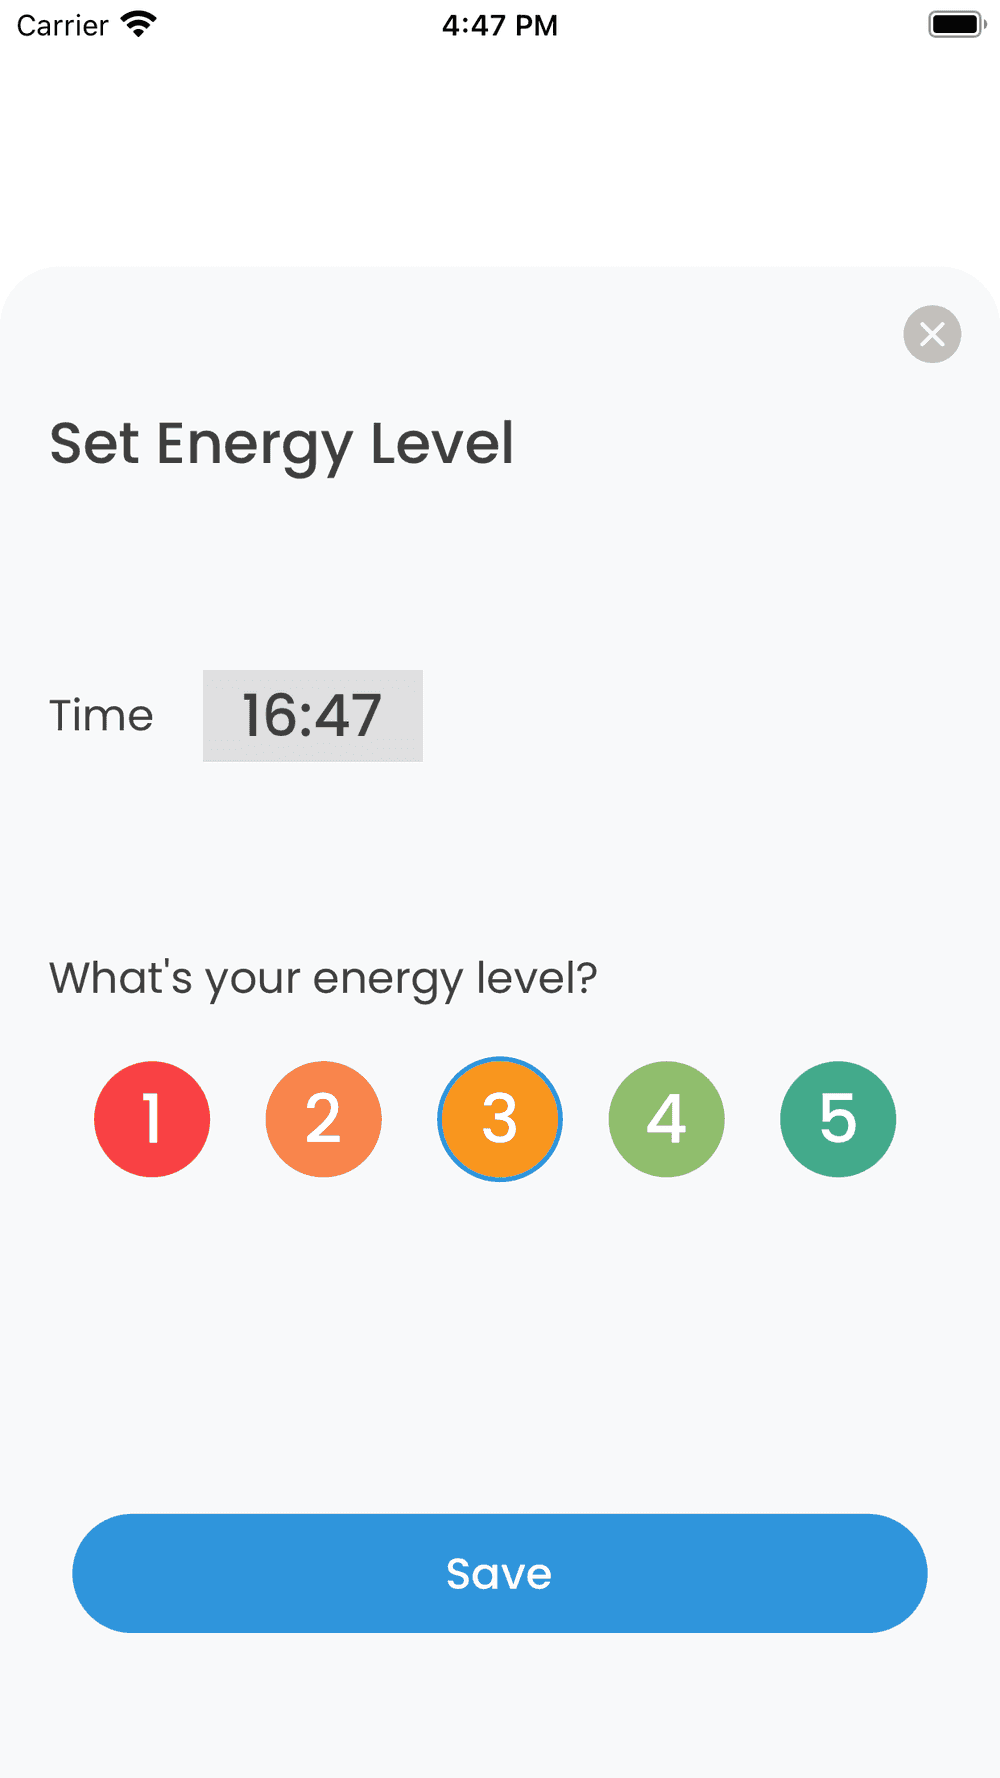 Screenshot of Energy Level Tracker App's Set Energy Level Modal